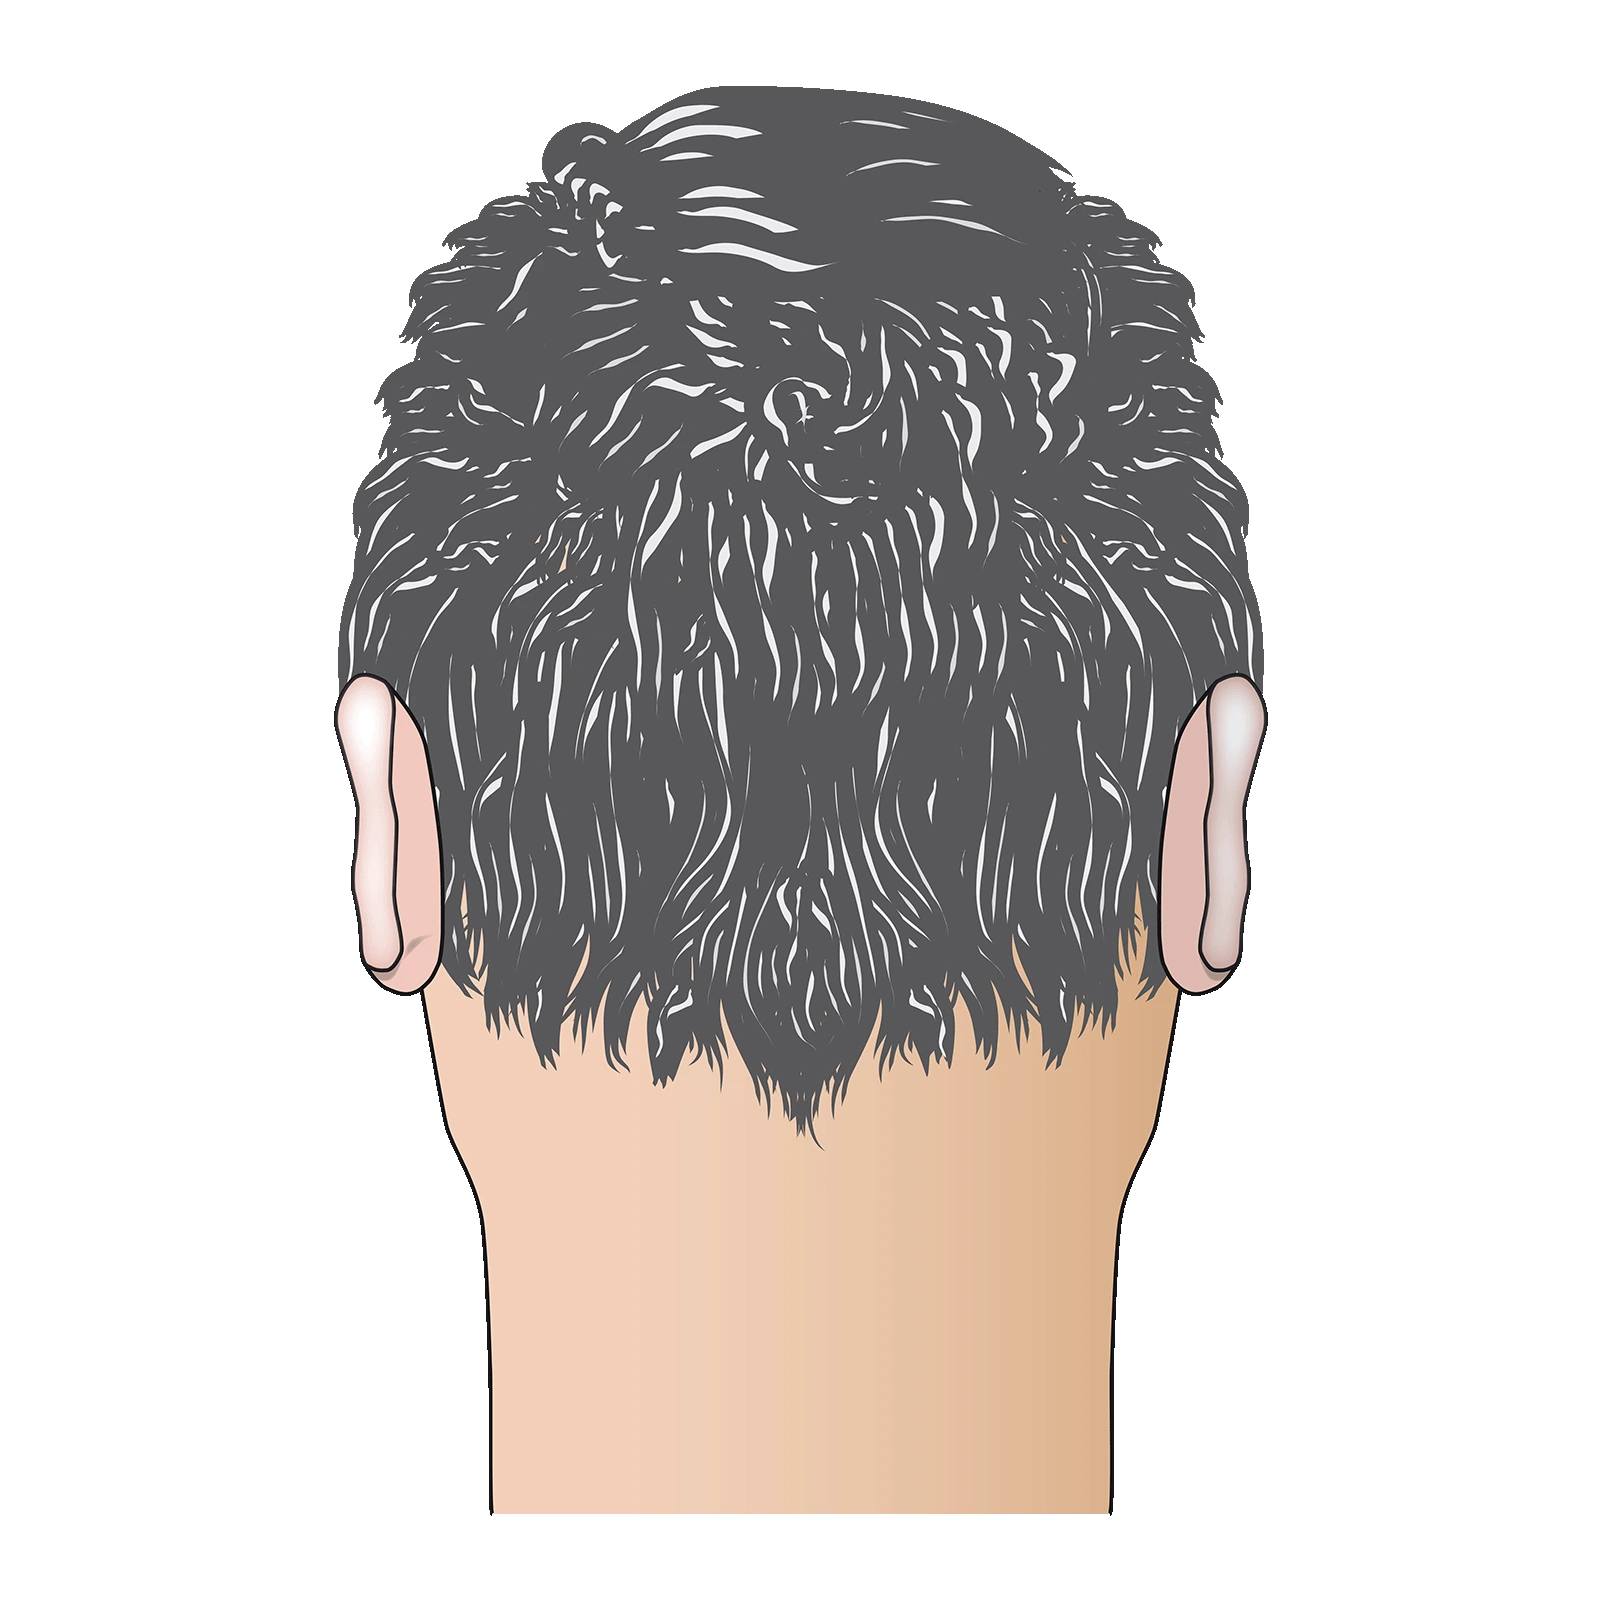 Bild 8: Endergebnis der FUE-Trannsplantation - Grafik eines männlichen Hinterkopfes mit vollem Haarwuchs